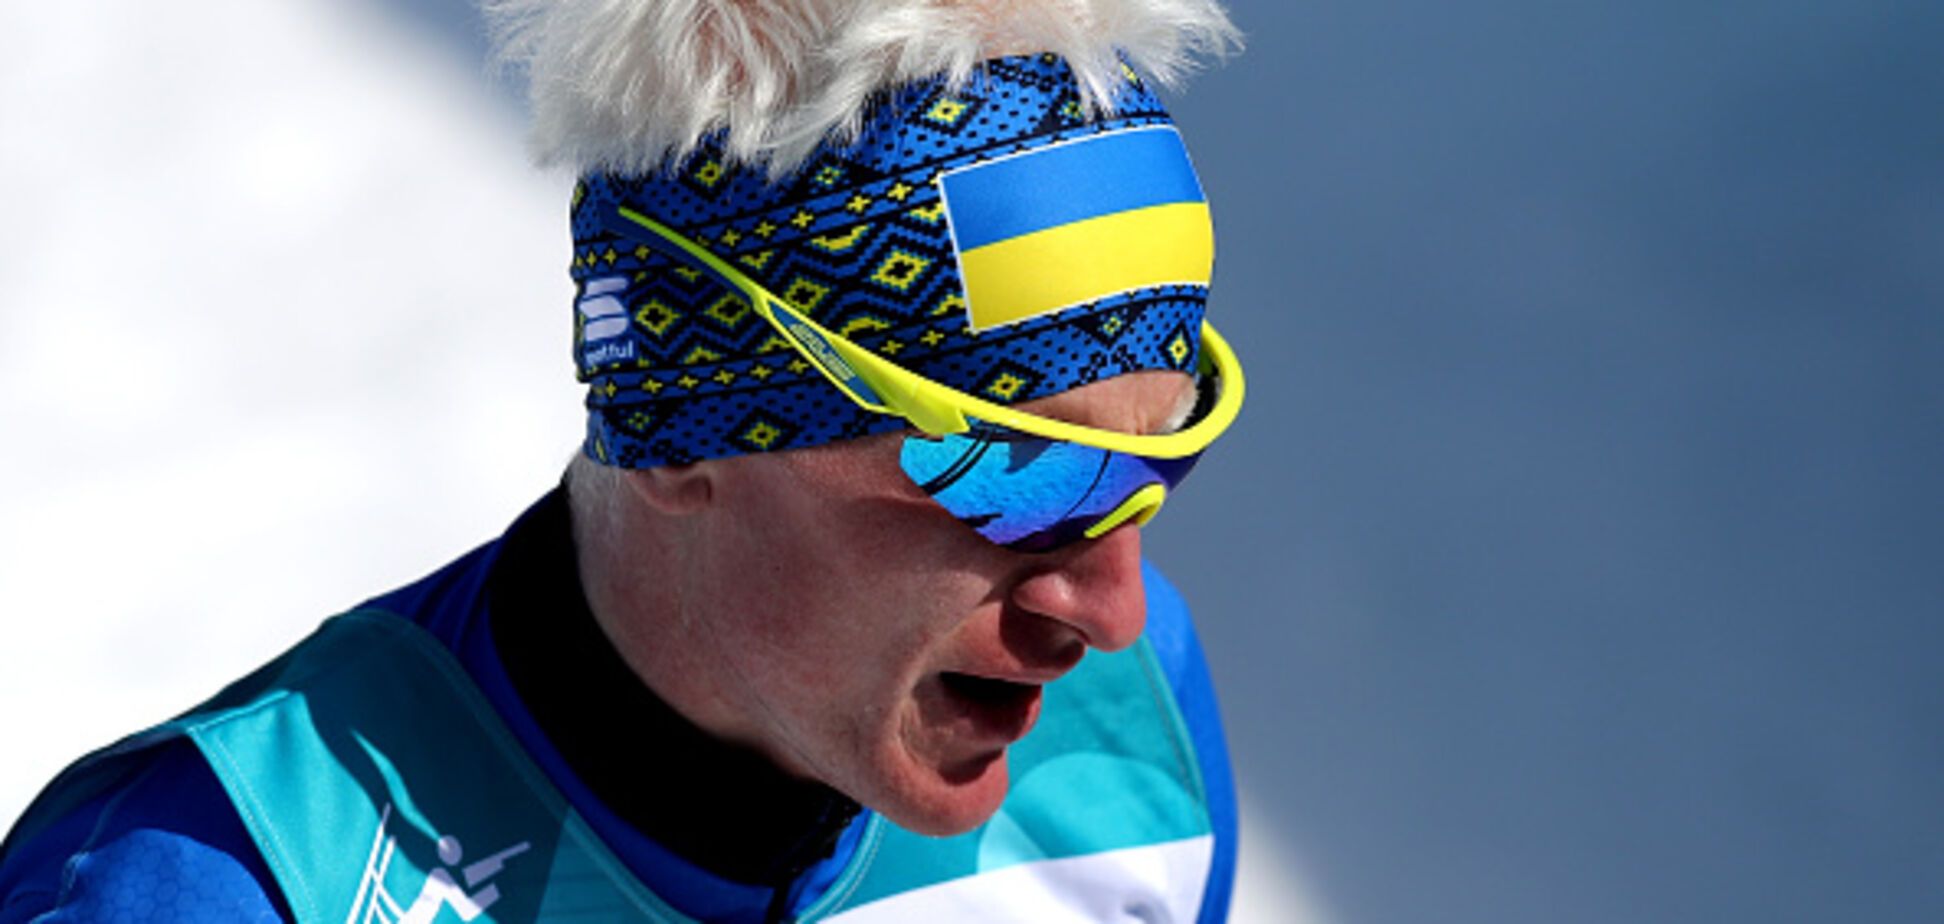 Феєрія! Україна увірвалася до медального заліка Паралімпіади-2018